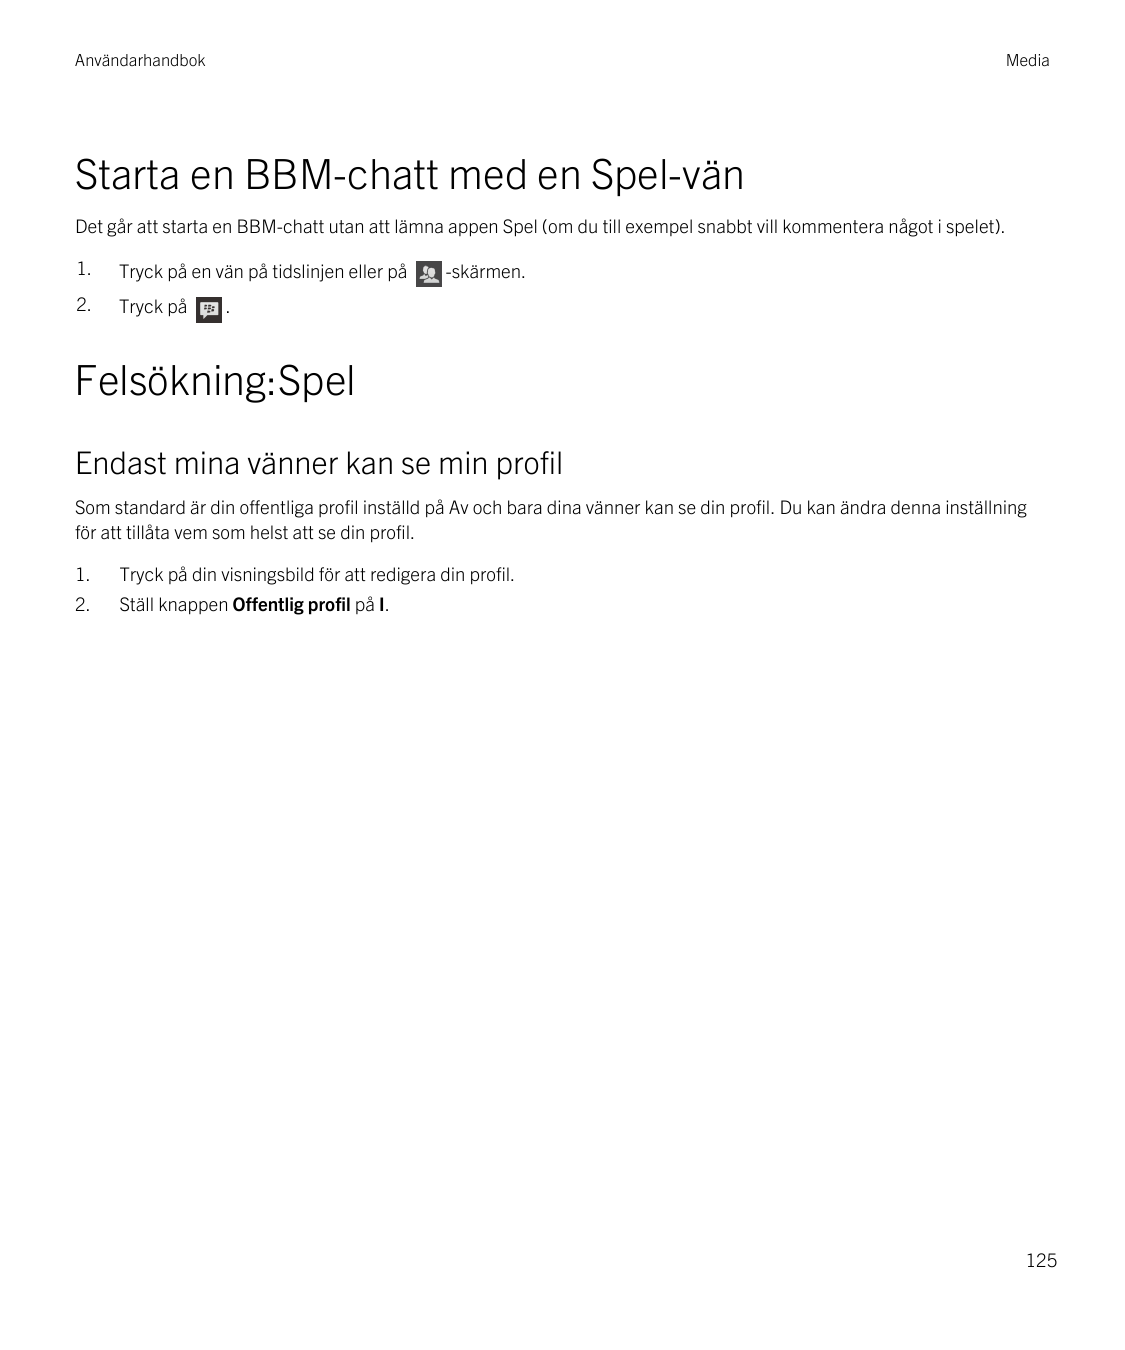 AnvändarhandbokMediaStarta en BBM-chatt med en Spel-vänDet går att starta en BBM-chatt utan att lämna appen Spel (om du till exe